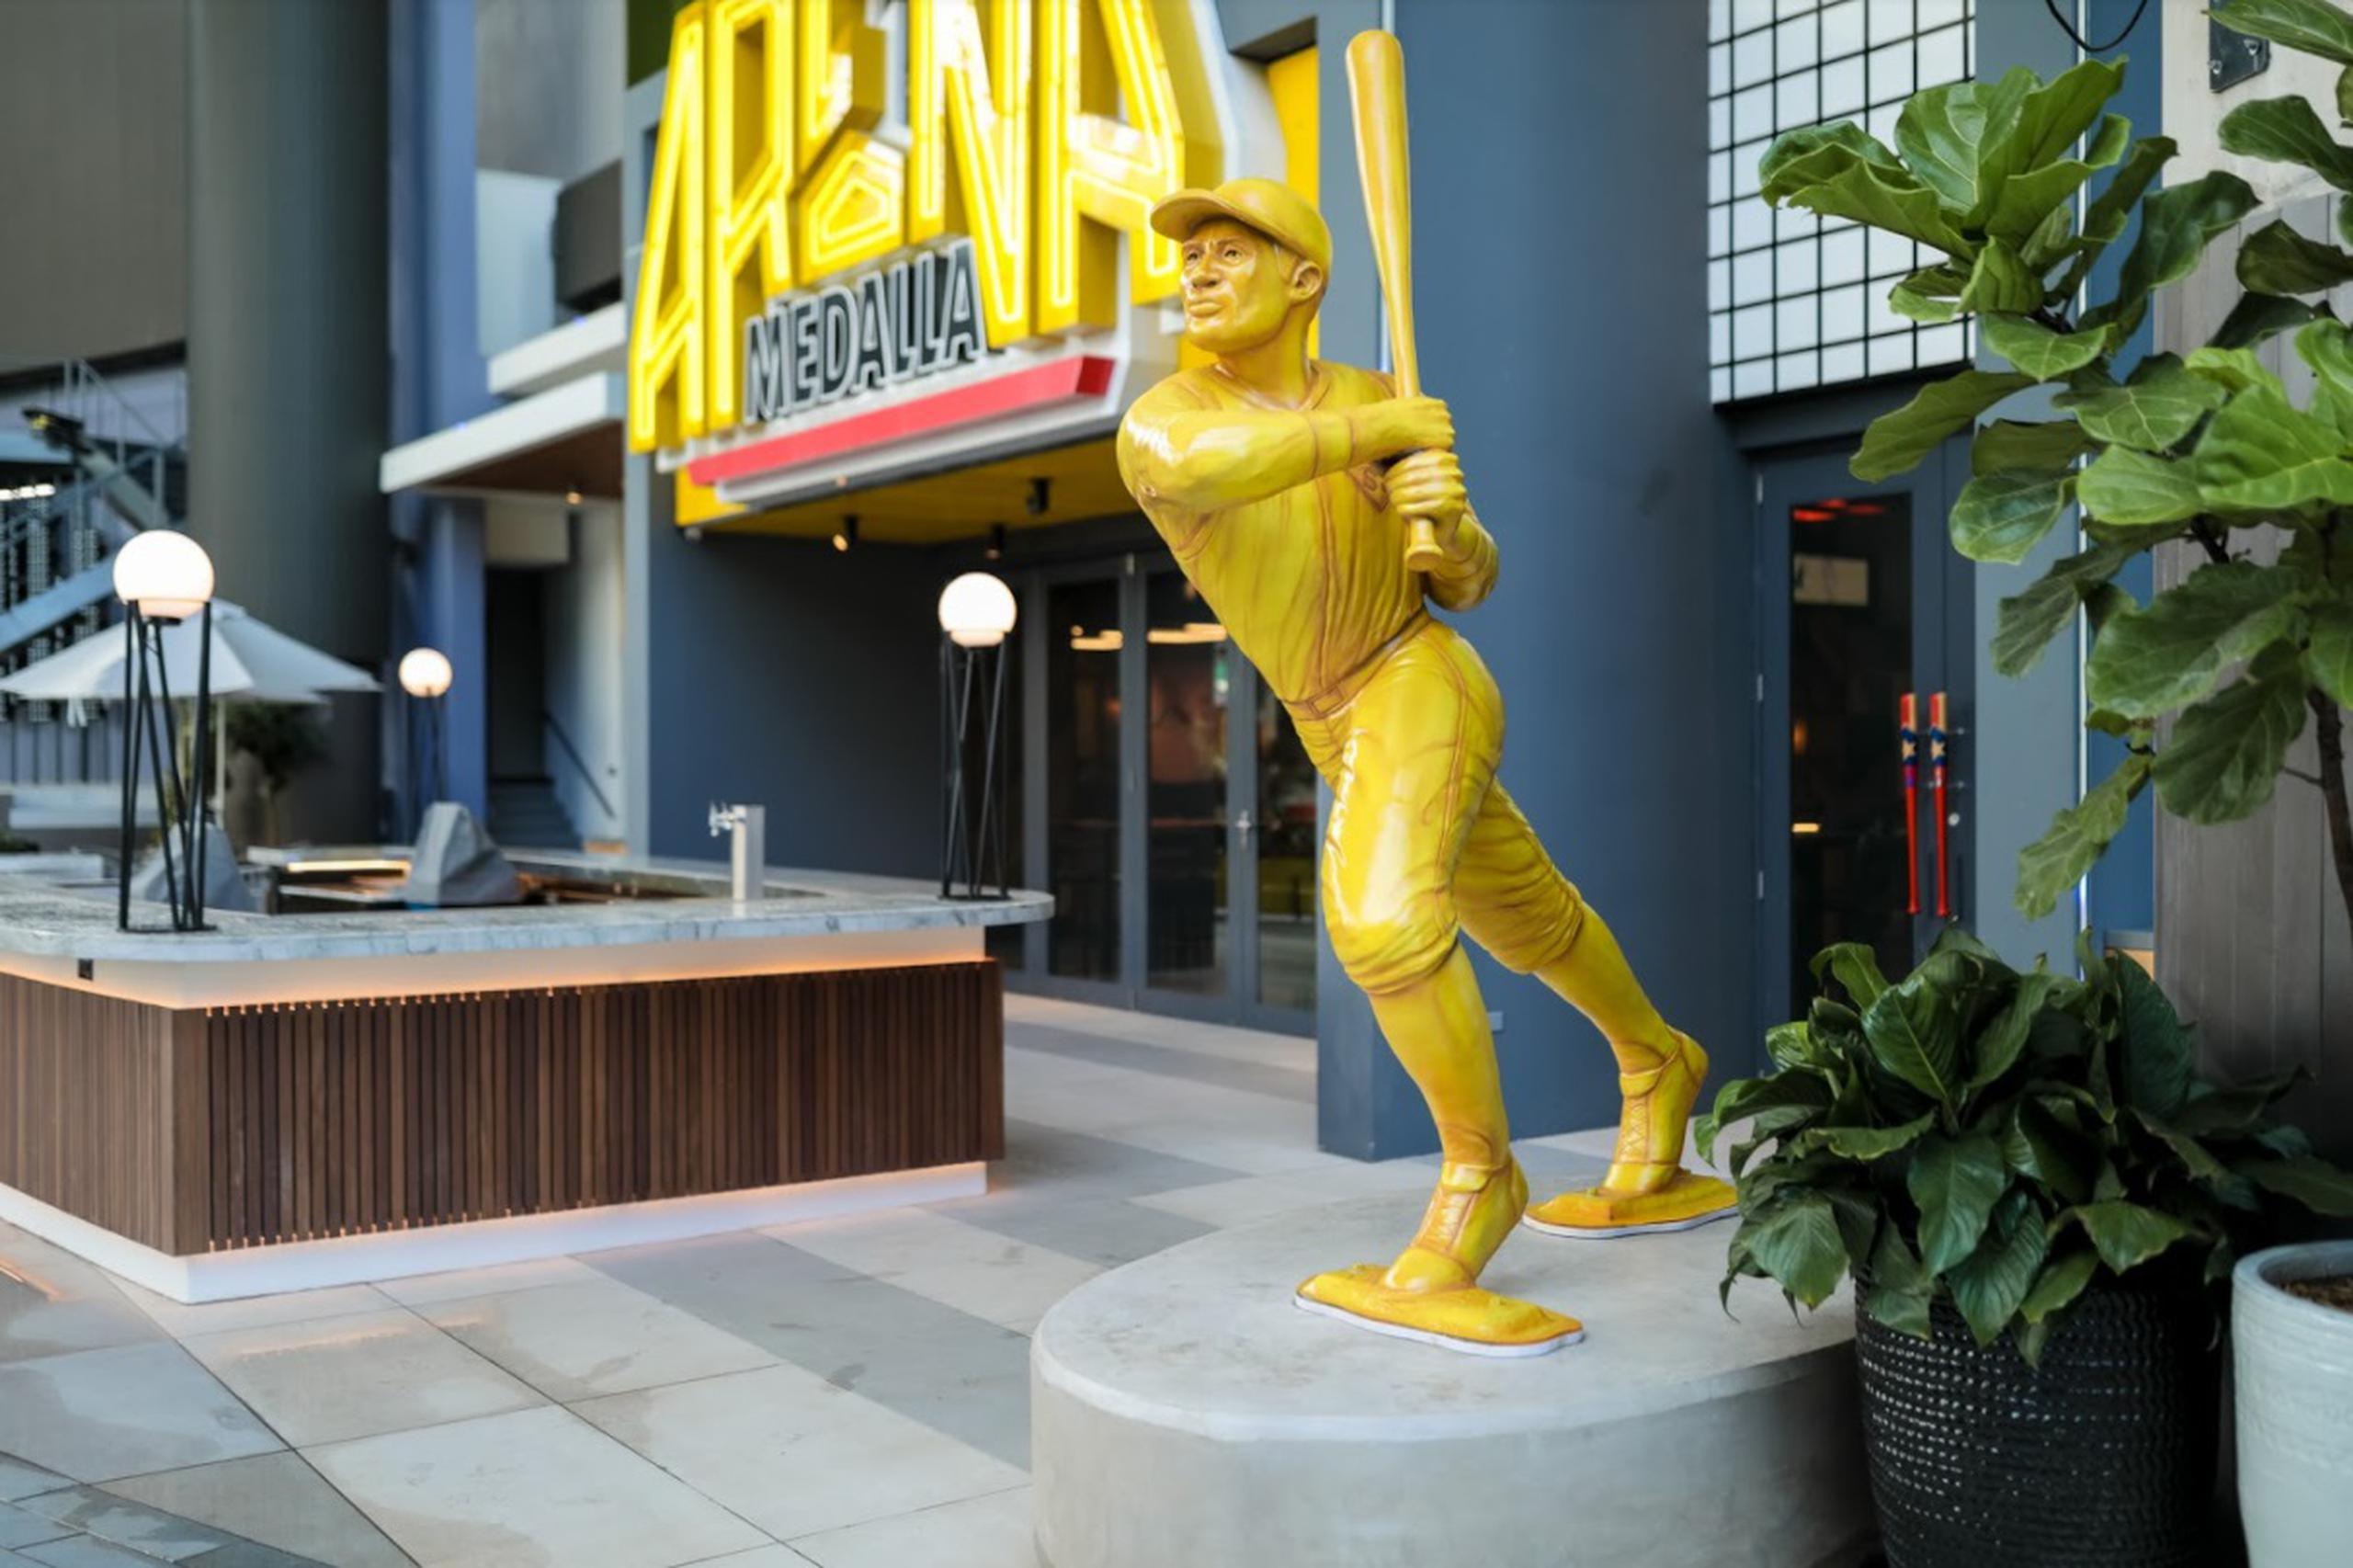 La estatua dorada, de diez pies de altura, fue esculpida en un material de resina, parecido a la arcilla, por el artista Ángel Torres.